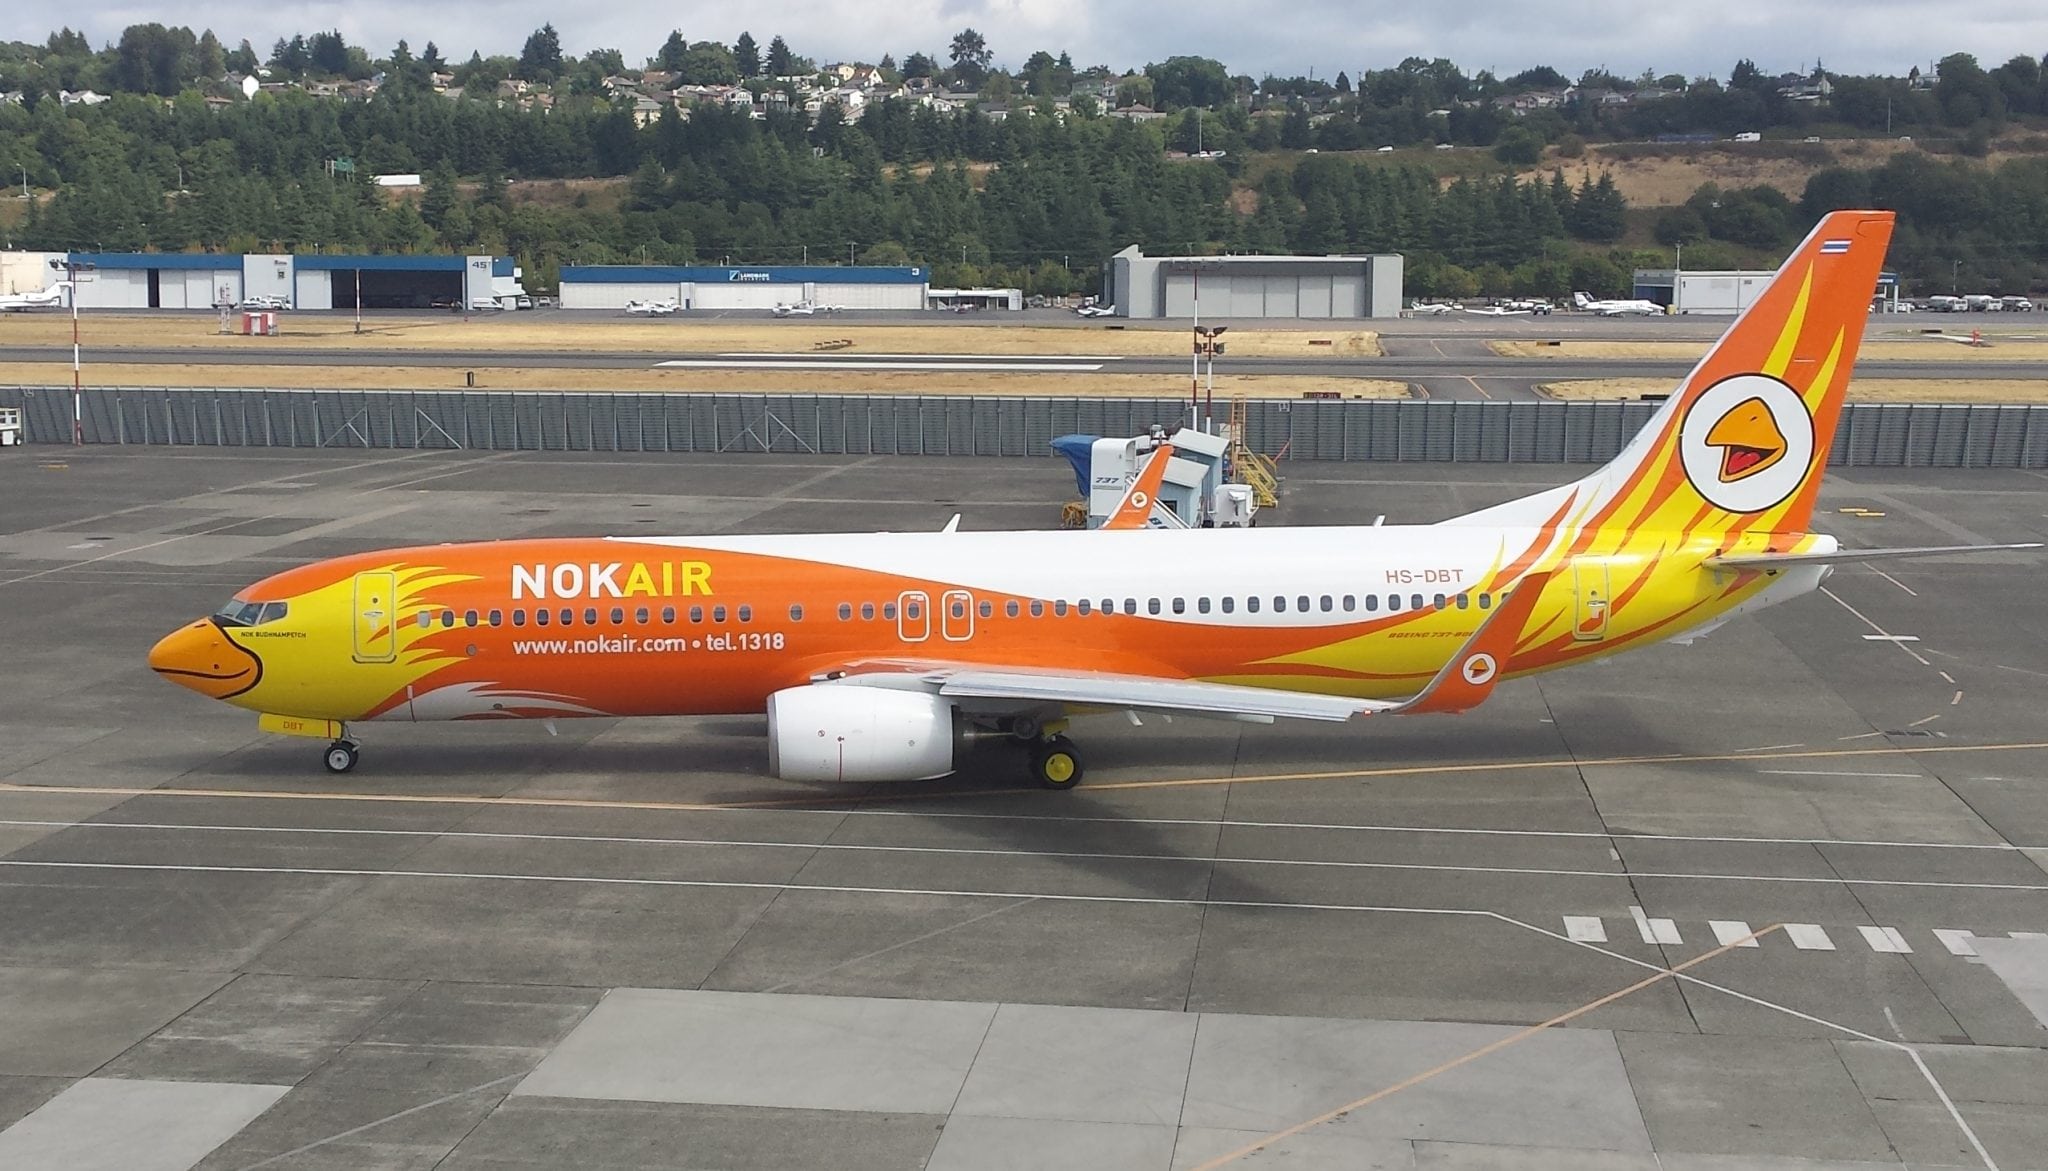 Nok Air Receives First 737-800 - Avionics International